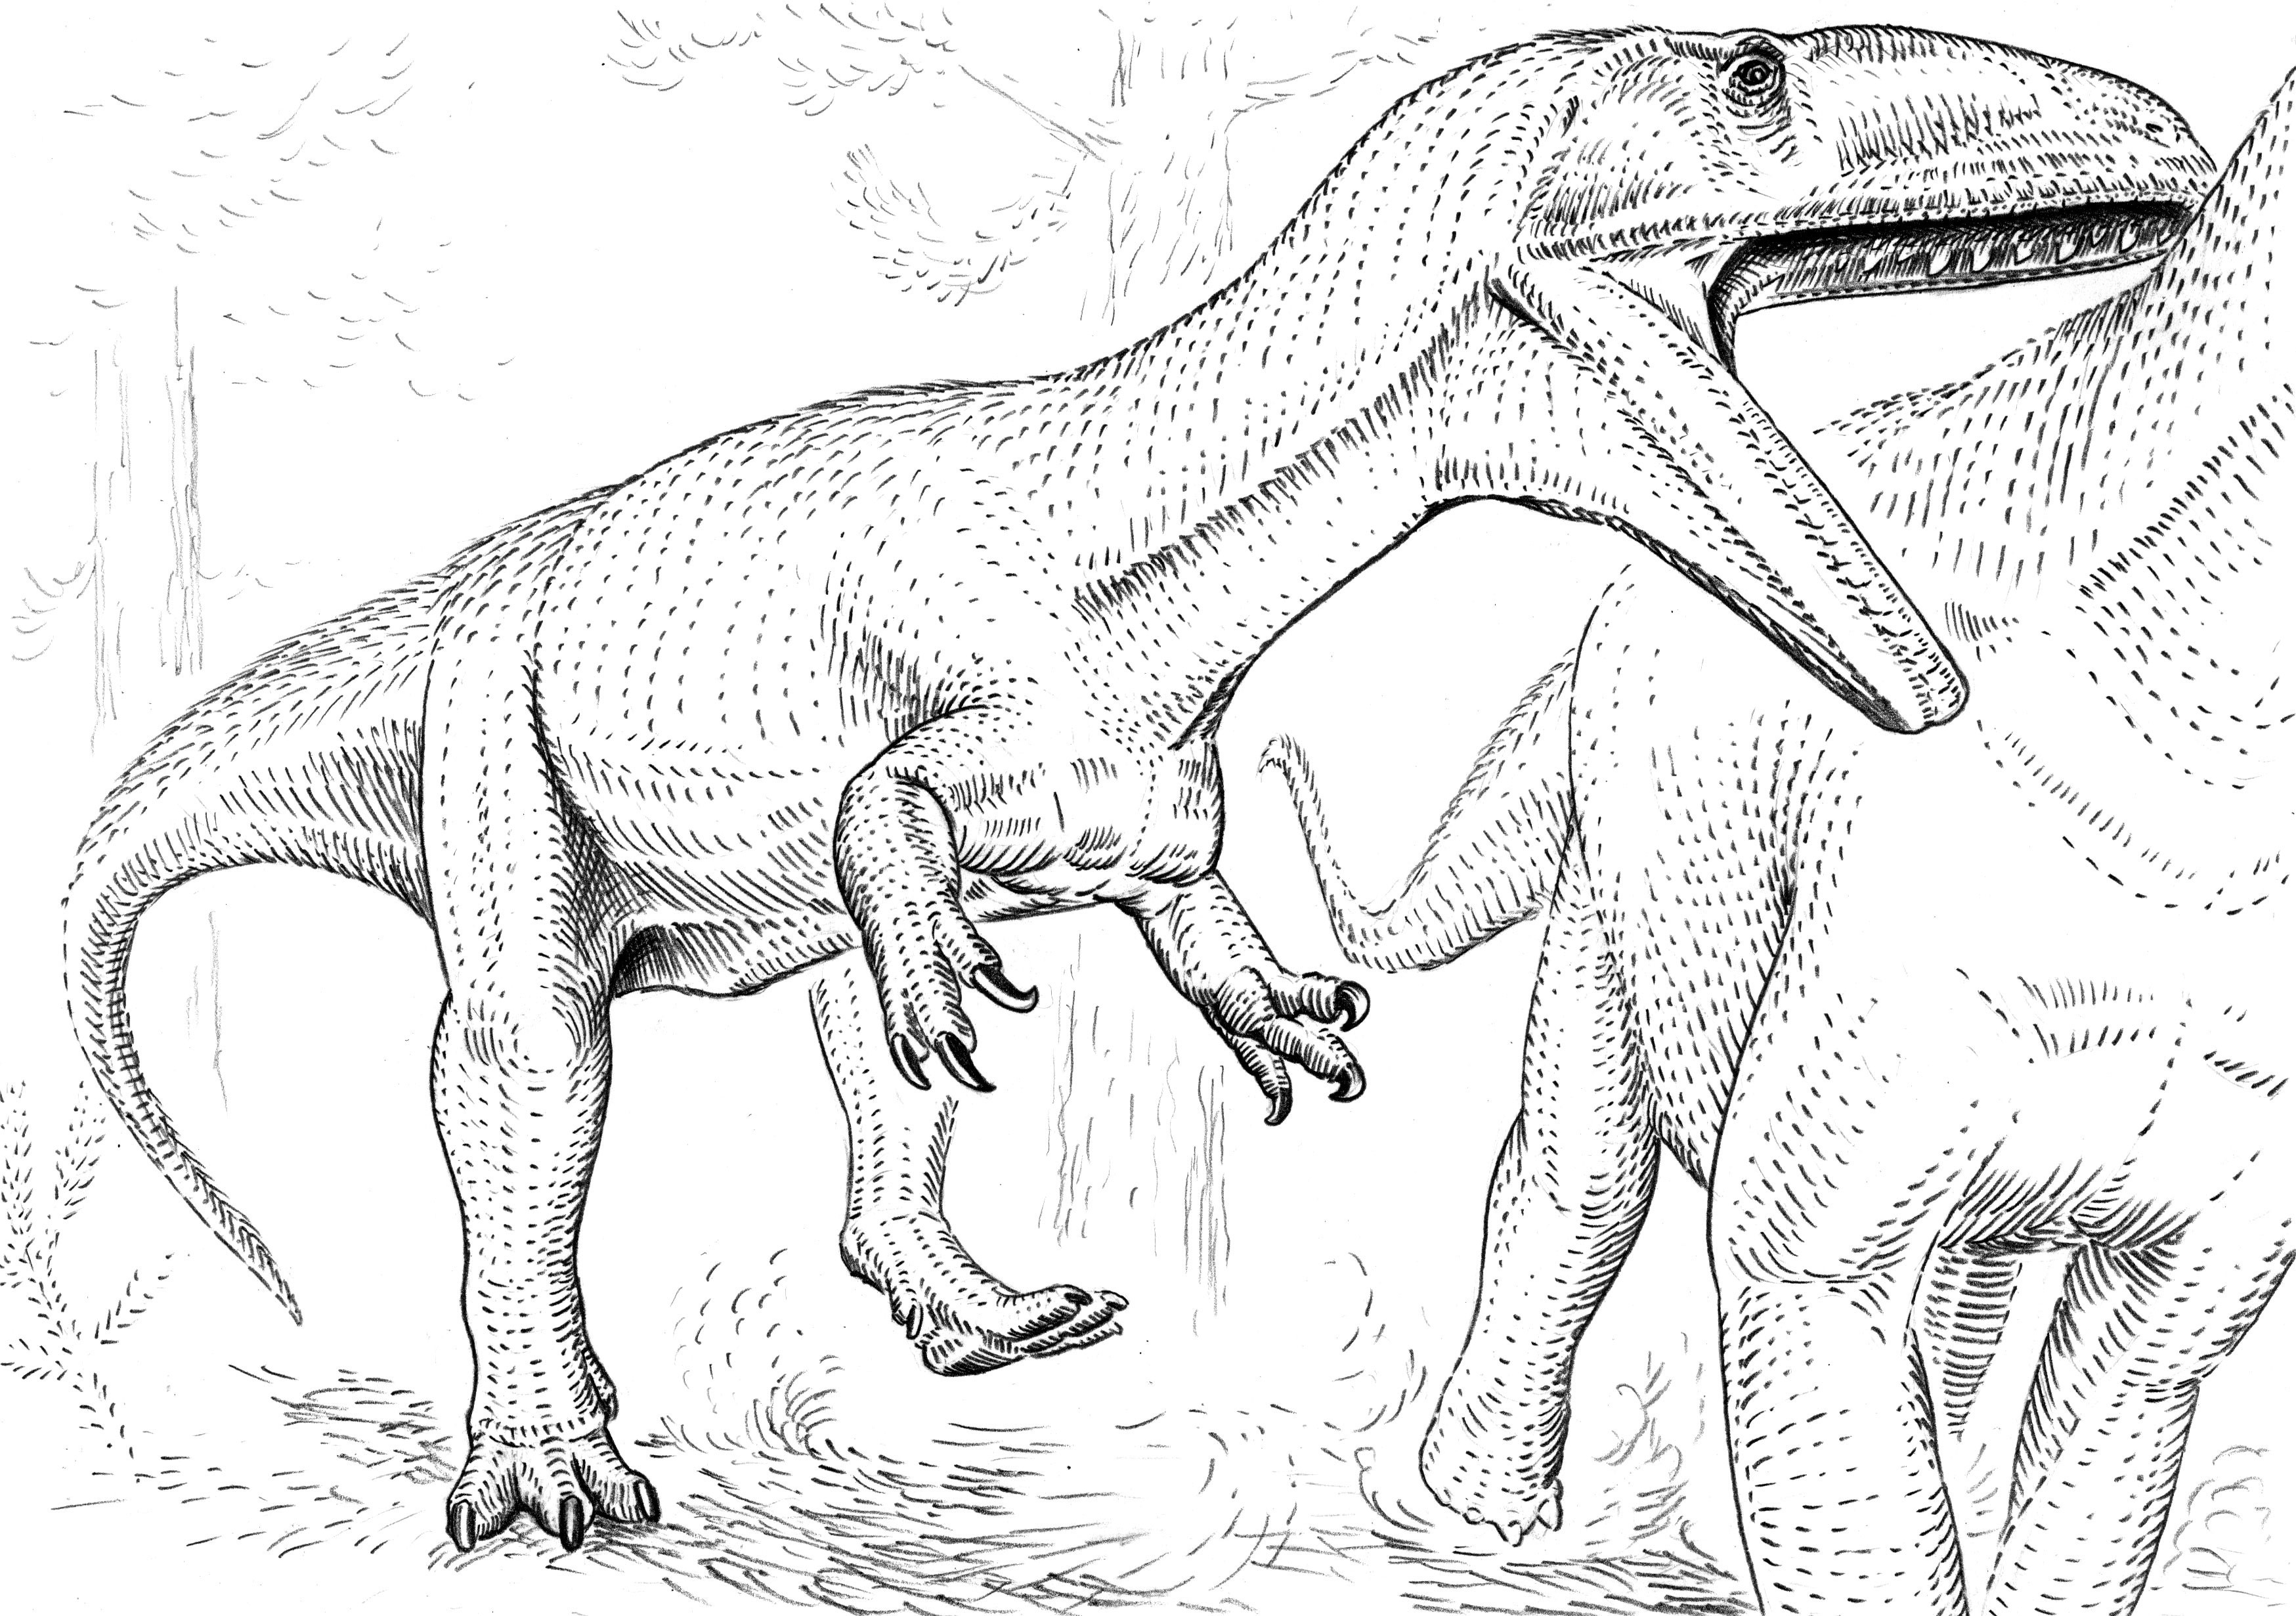 Аллозавр разукрашка